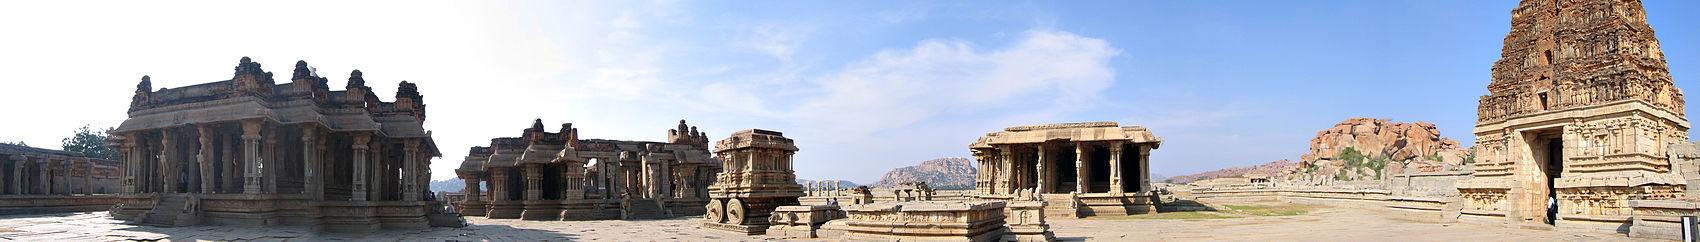 Panoramabillede af Vittalatemplet, som byggedes i Deva Raya II's tid. Templet blev udvidet under Krishnadevaraya styre.